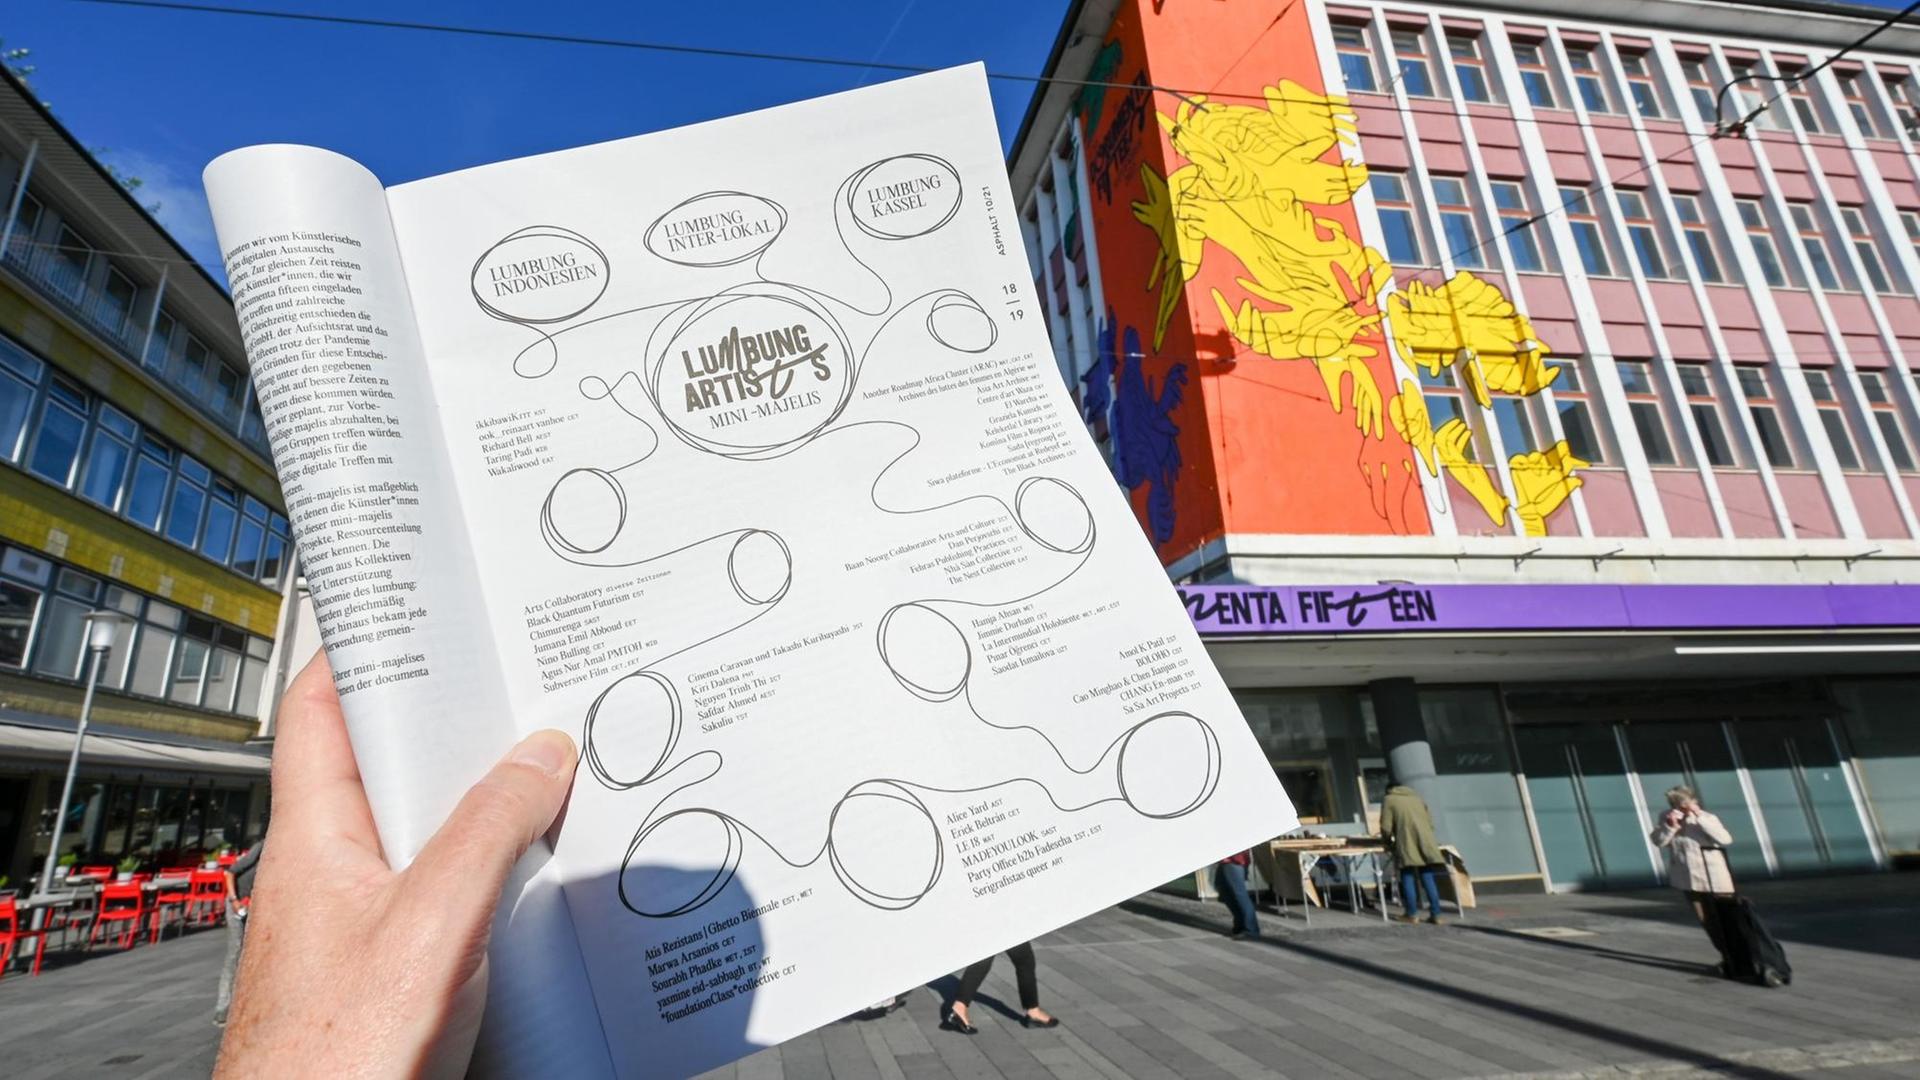 Eine Hand hält die Straßenzeitung "Asphalt", aufgeschlagen auf der Seite mit der kompletten Liste der ausstellenden Künstlerinnen und Künstler der Documenta 15, vor dem "ruruHaus".